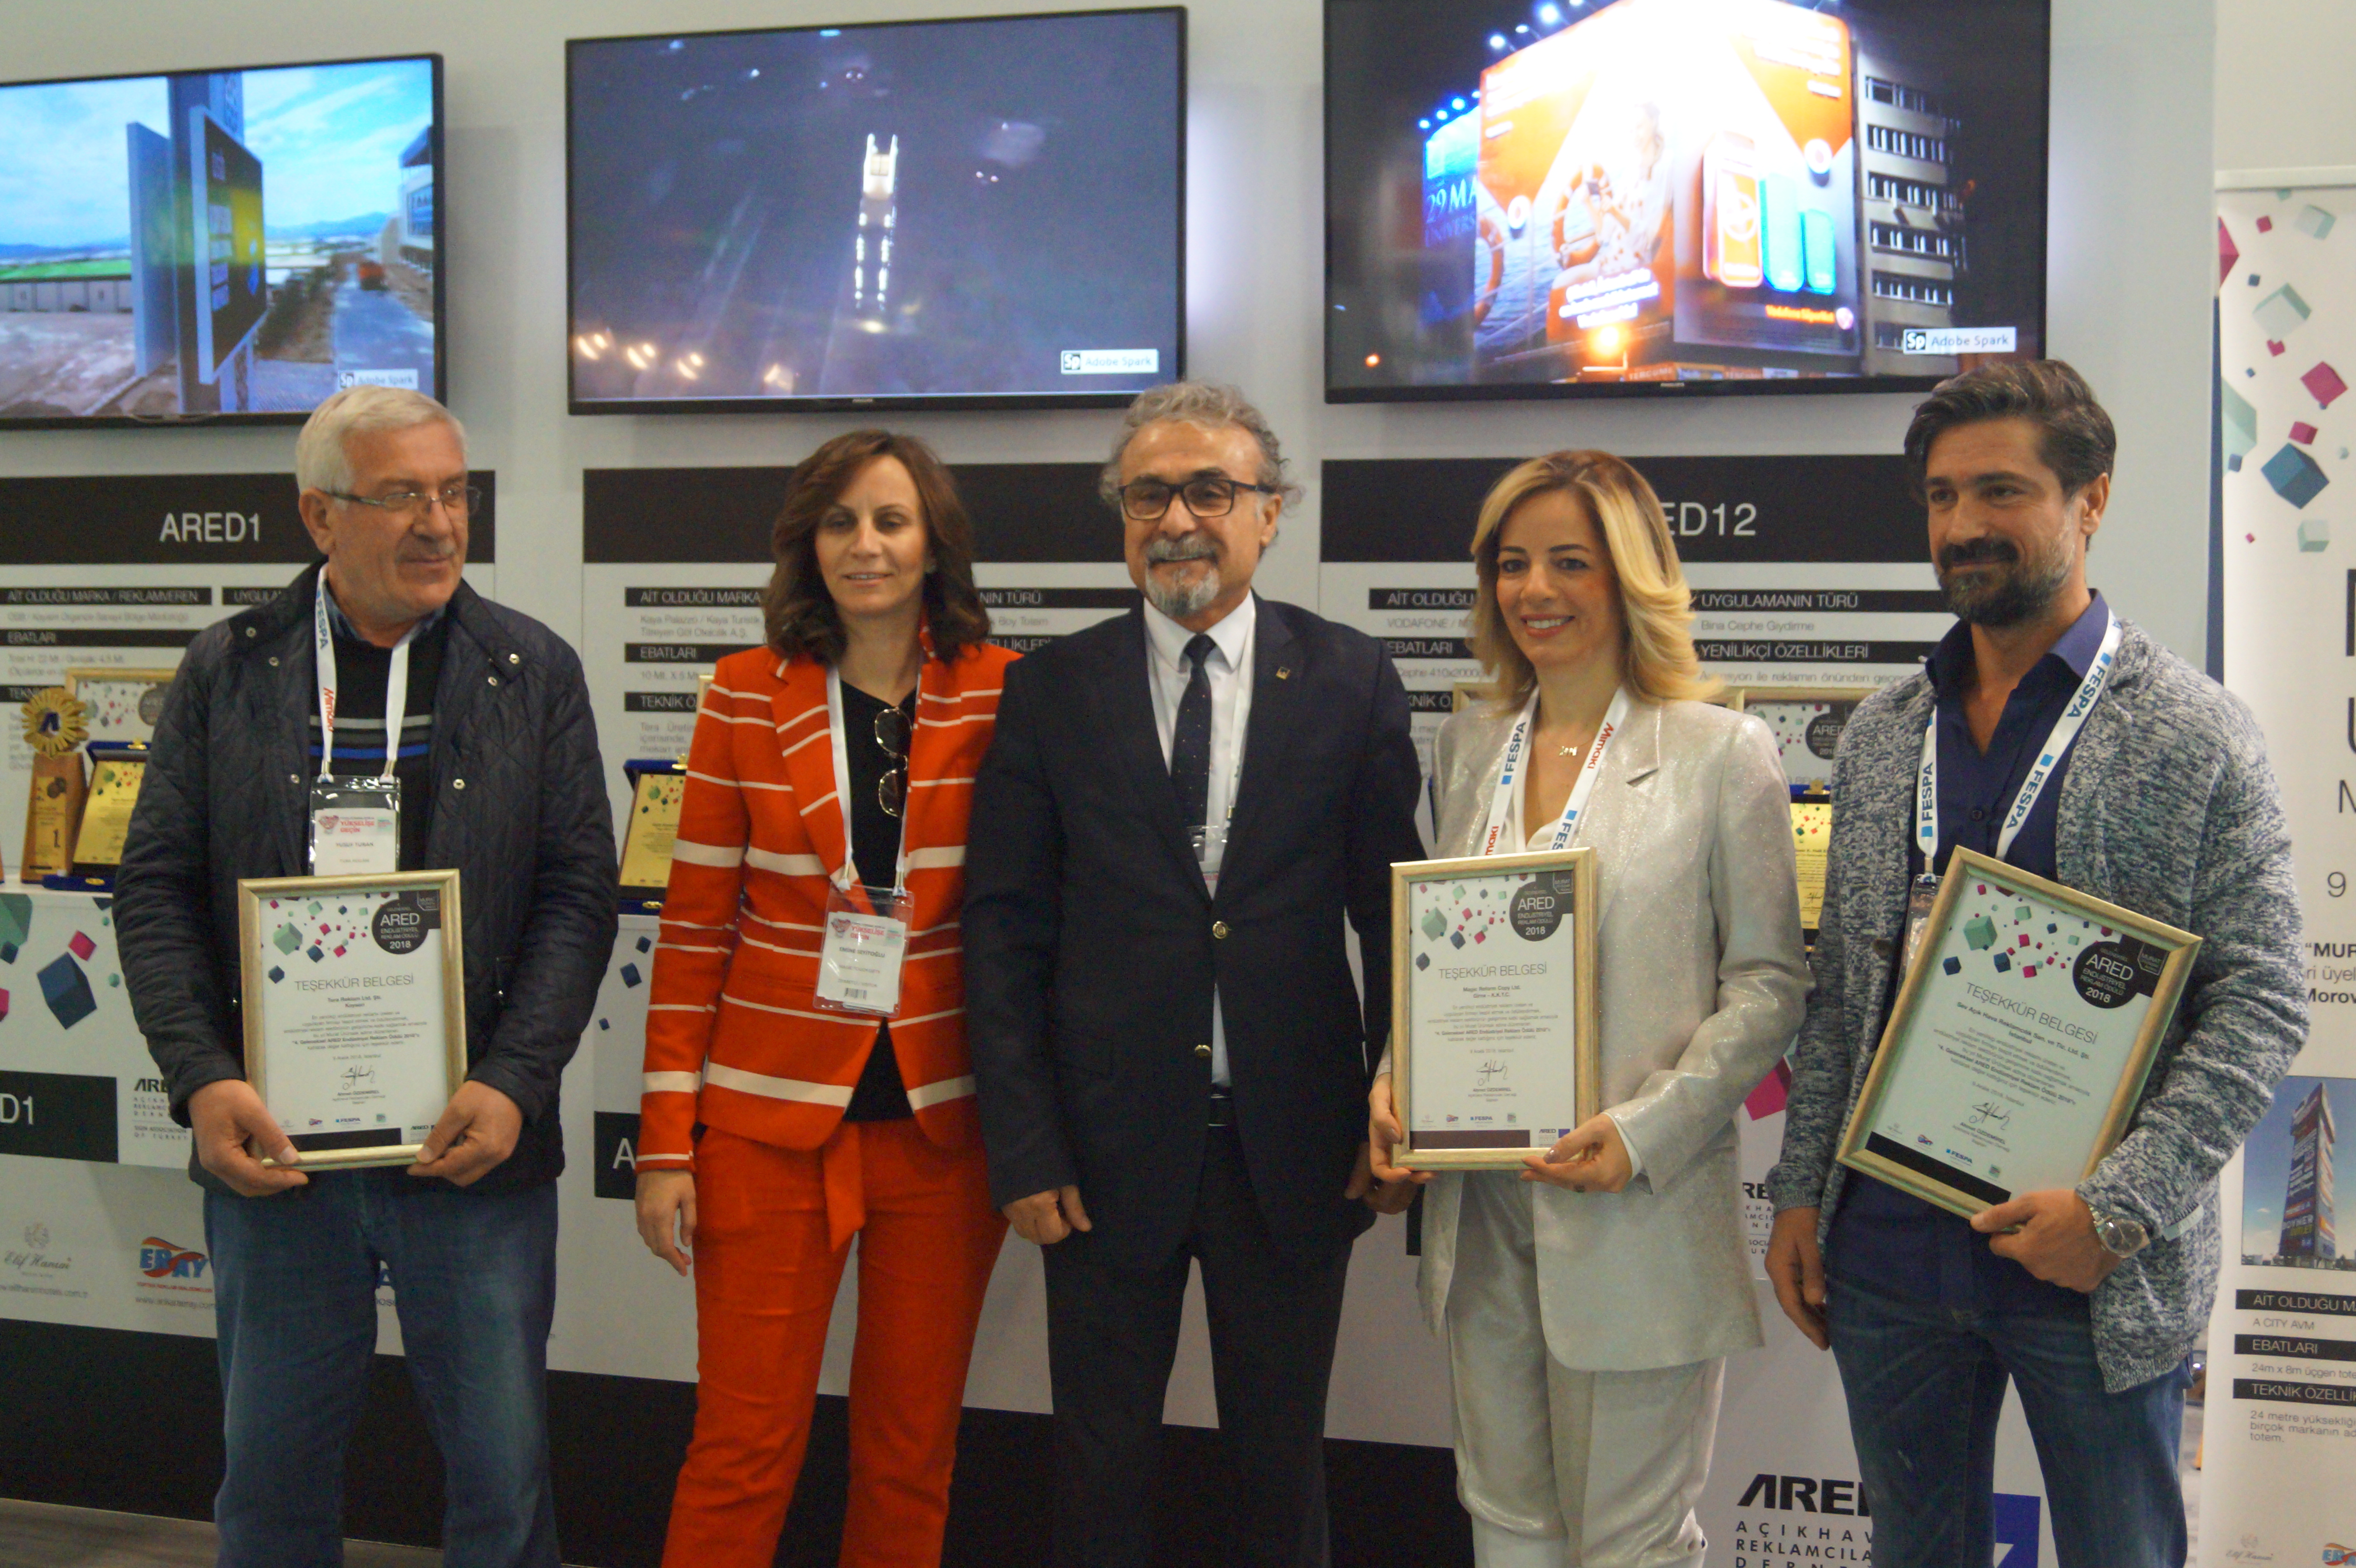 Murat Ürünsak Anısına Düzenlenen 4. Geleneksel ARED Endüstriyel Reklam Ödülü’nün Kazananları Belli Oldu.